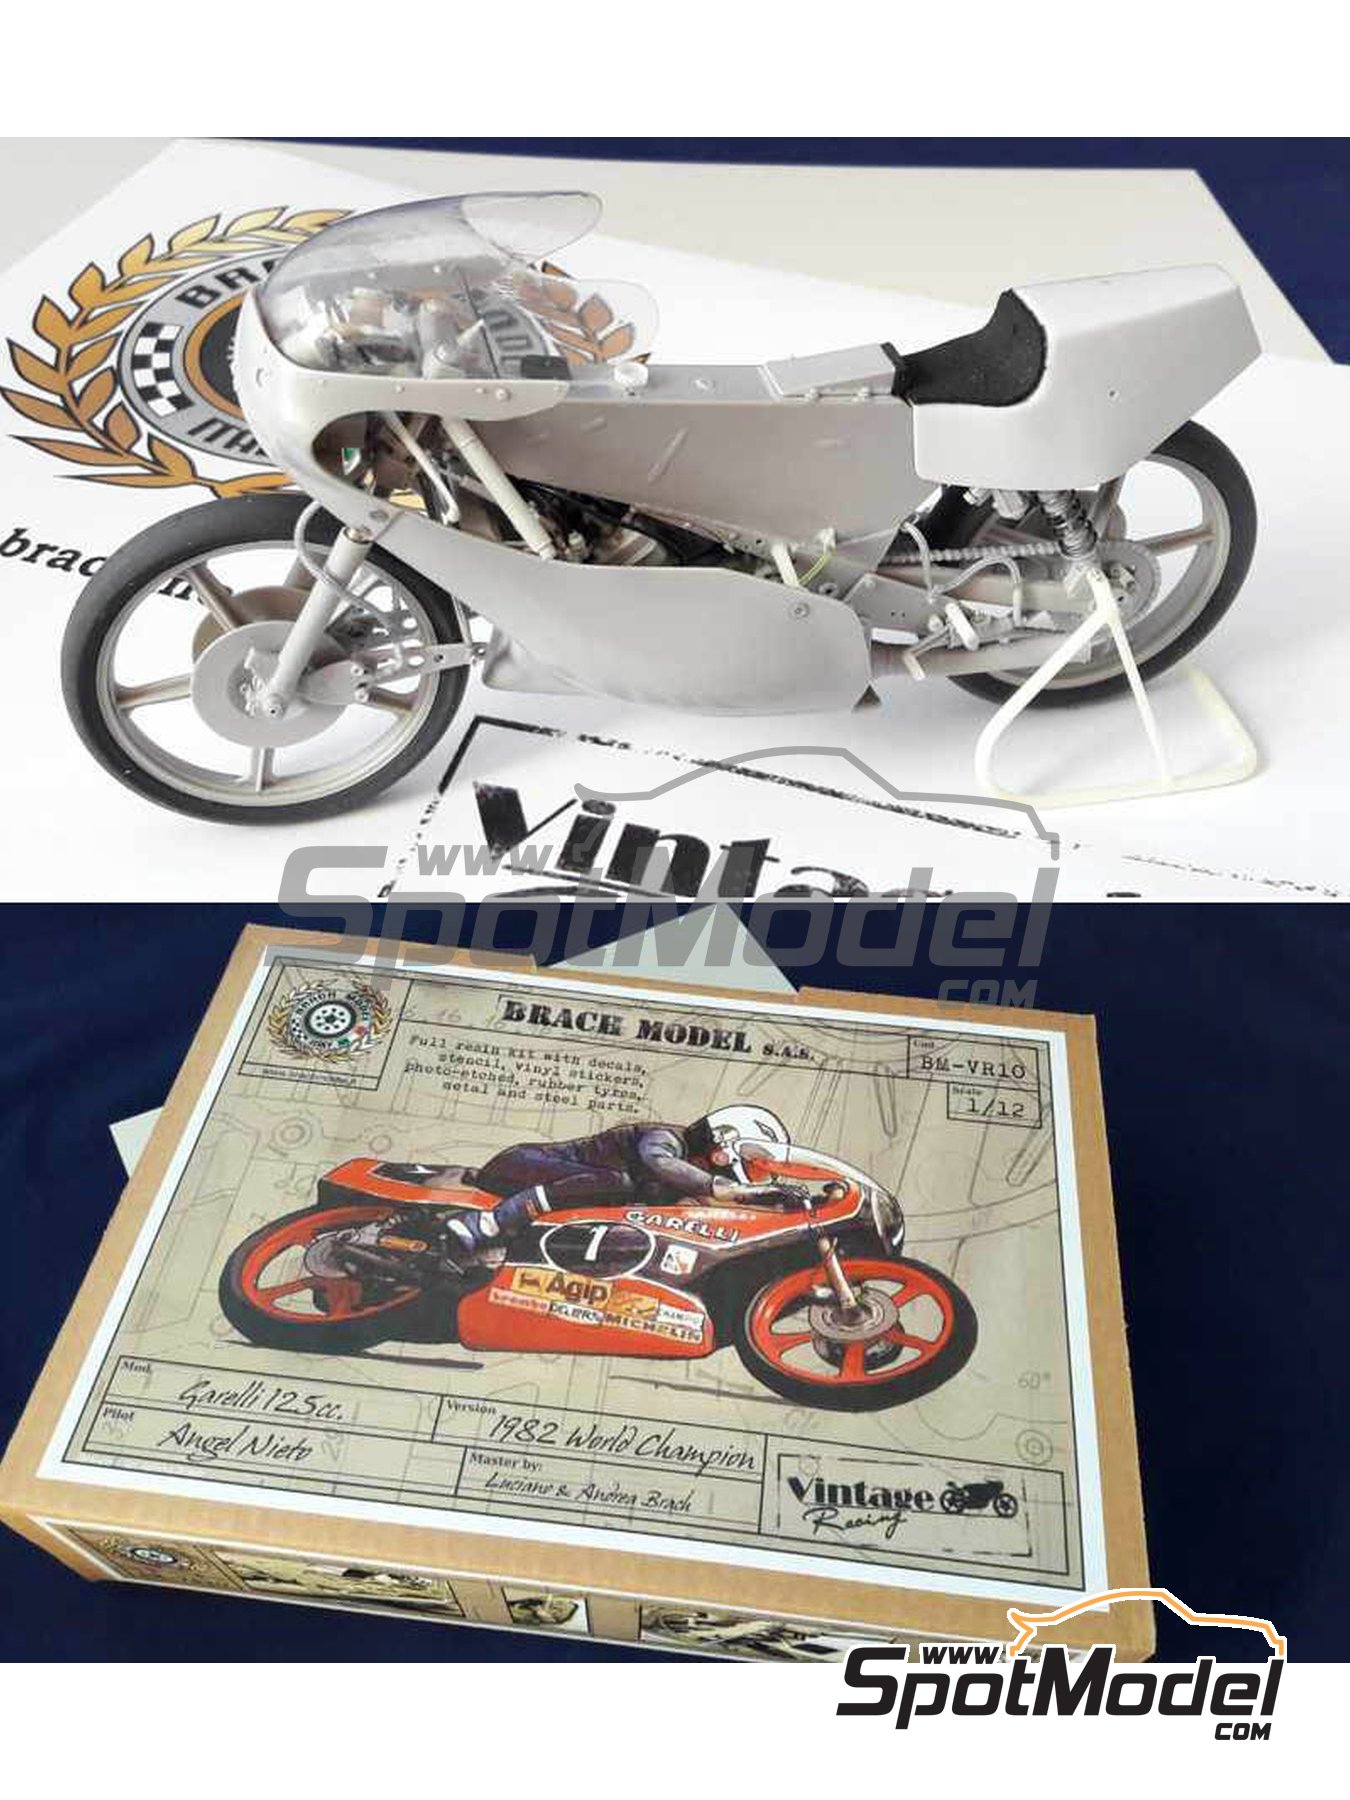 Escarpado Jajaja Víspera de Todos los Santos Brach Model BM-VR10: Maqueta de moto escala 1/12 - Garelli 125cc Nº 1 -  Angel Nieto (ES) - Campeonato del Mundo de Motociclismo 1982 (ref. BM-VR10)  | SpotModel